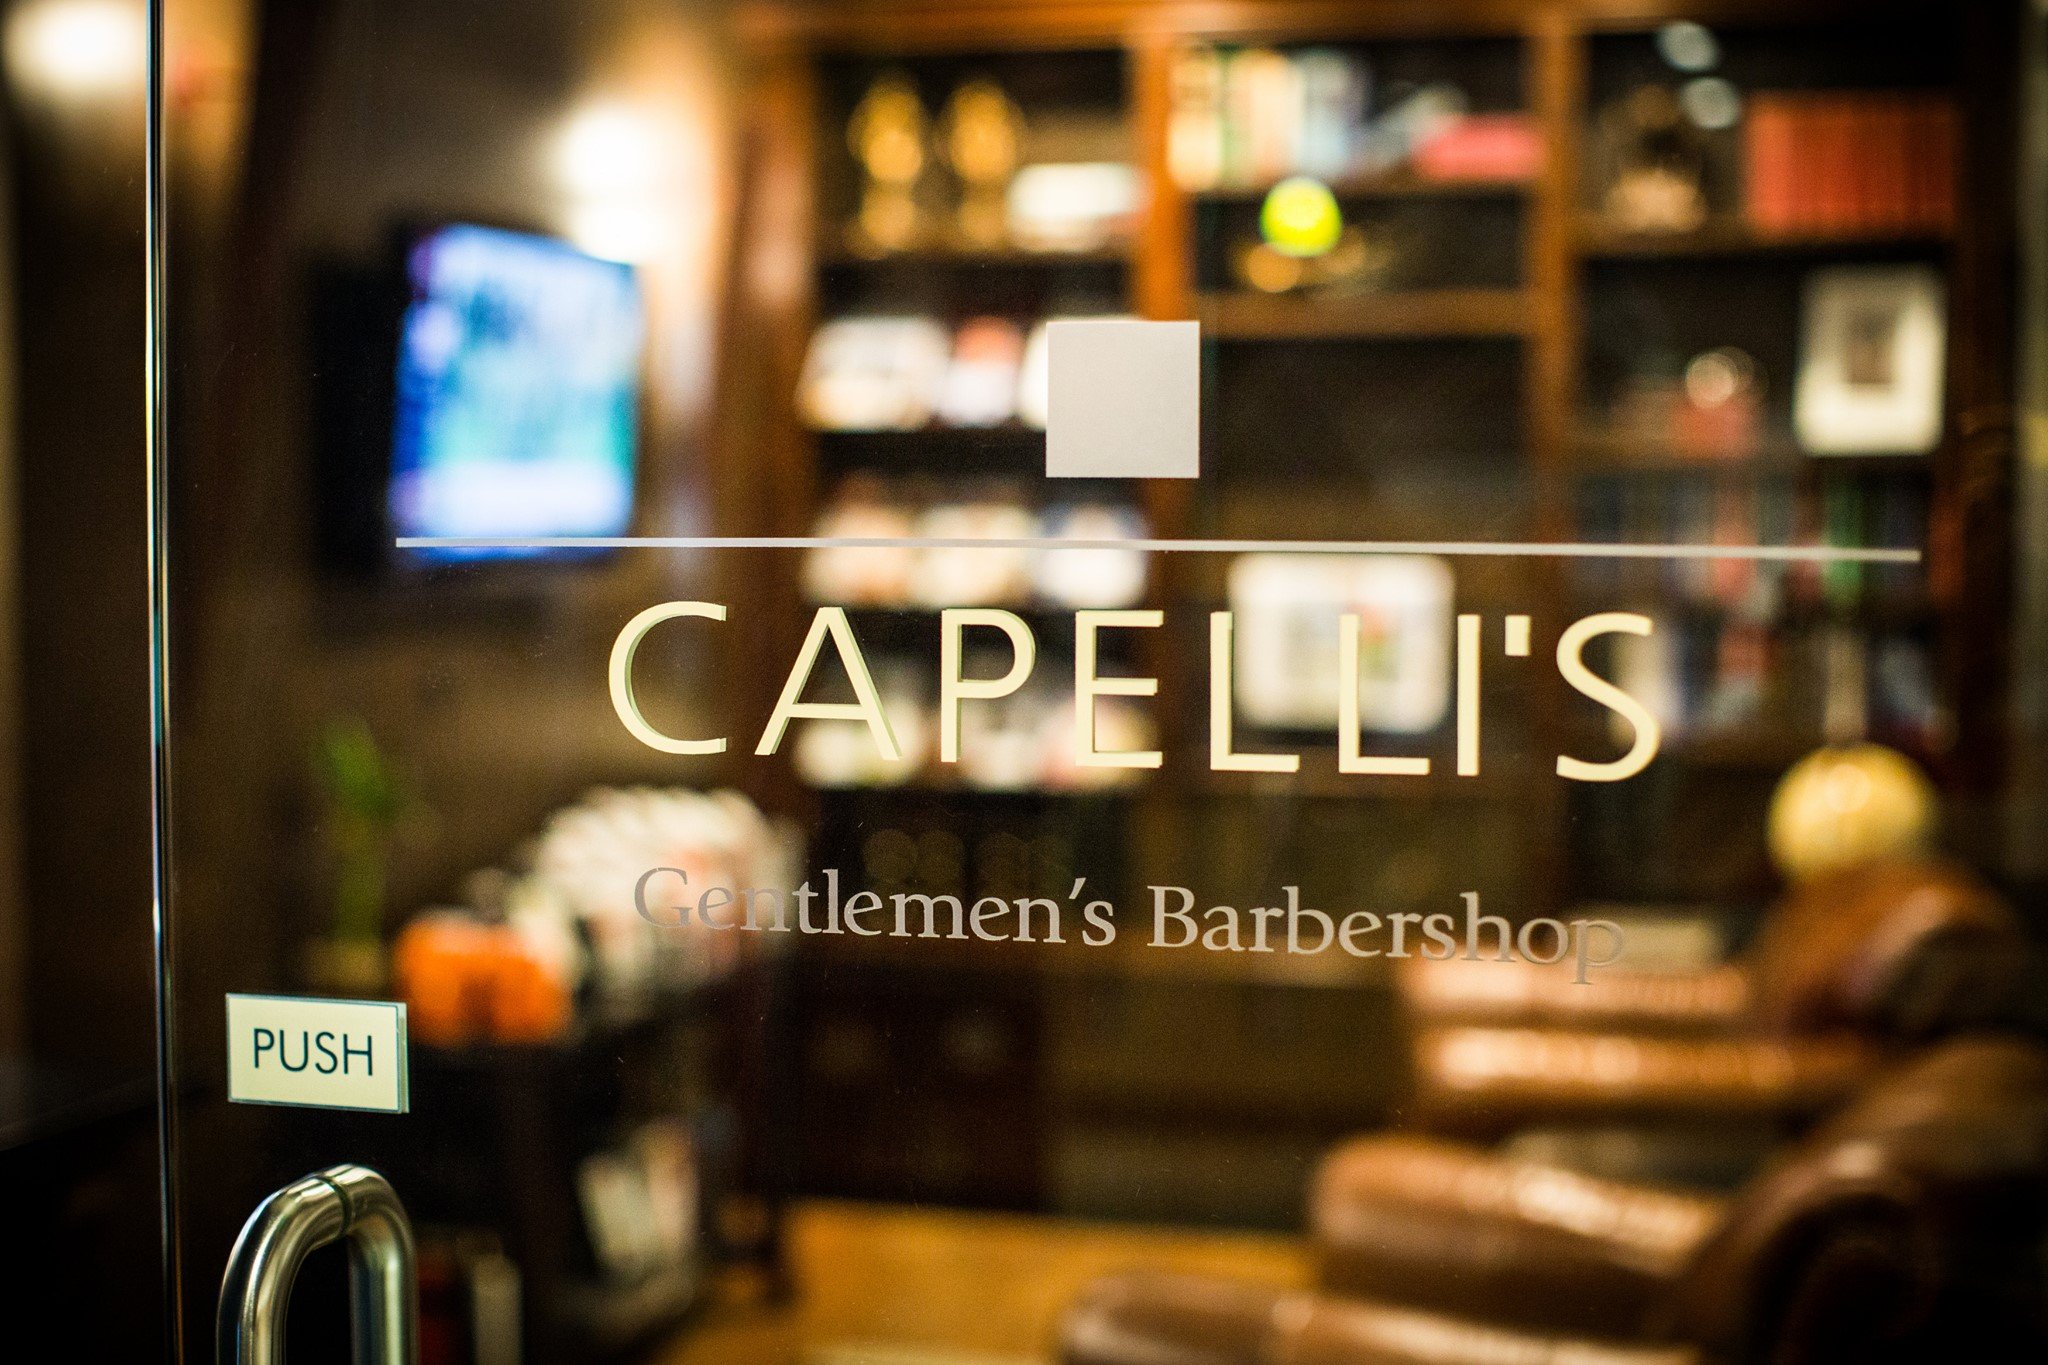 Capelli's Gentlemen's Barbershop - 4th & Madison